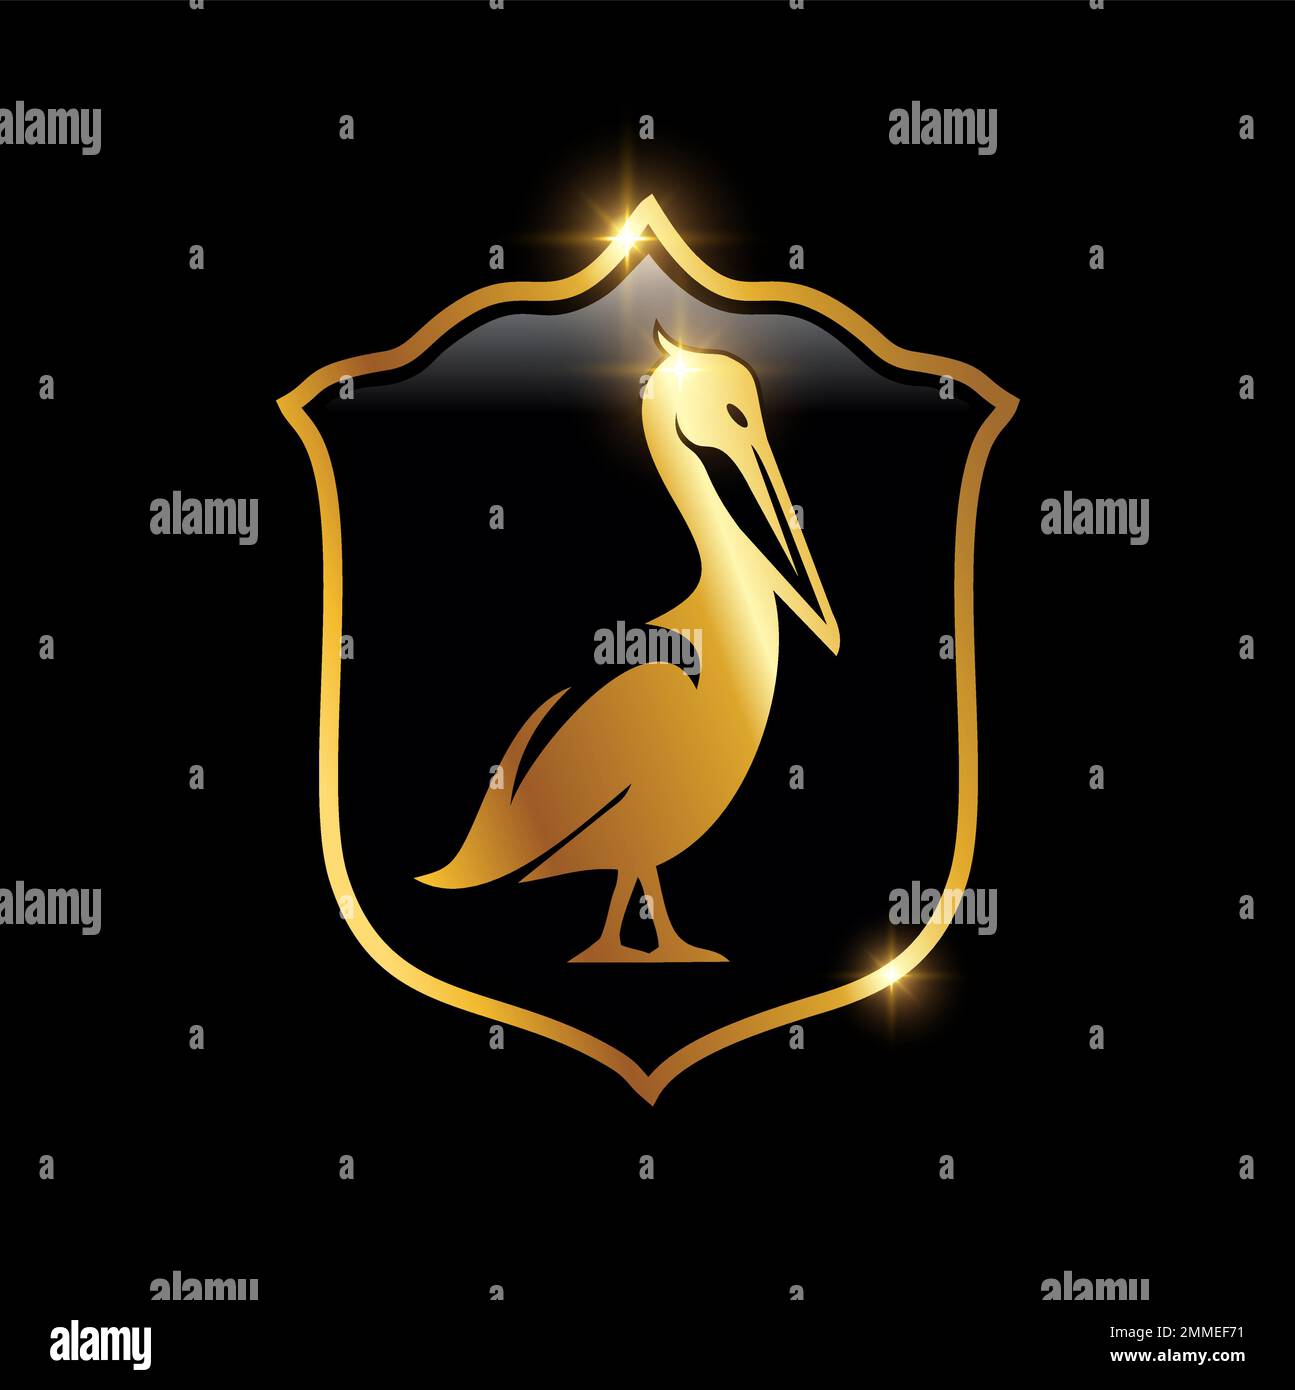 Ein Vektorzeichen mit goldenem Pelican Bird Logo auf schwarzem Hintergrund mit goldenem Glanzeffekt Stock Vektor